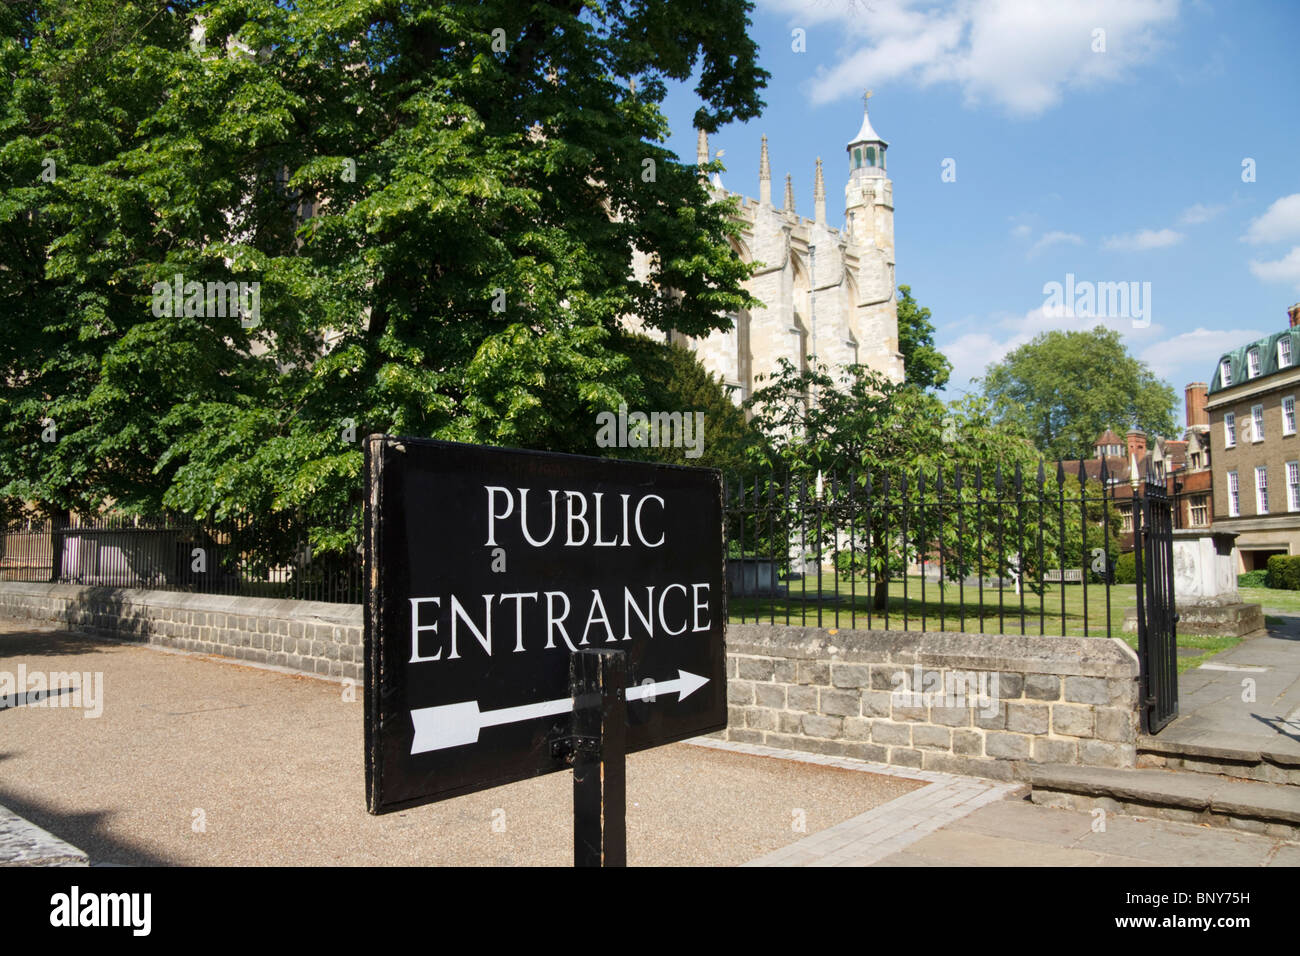 Public entrance sign, Eton College, Berkshire, England, UK Stock Photo